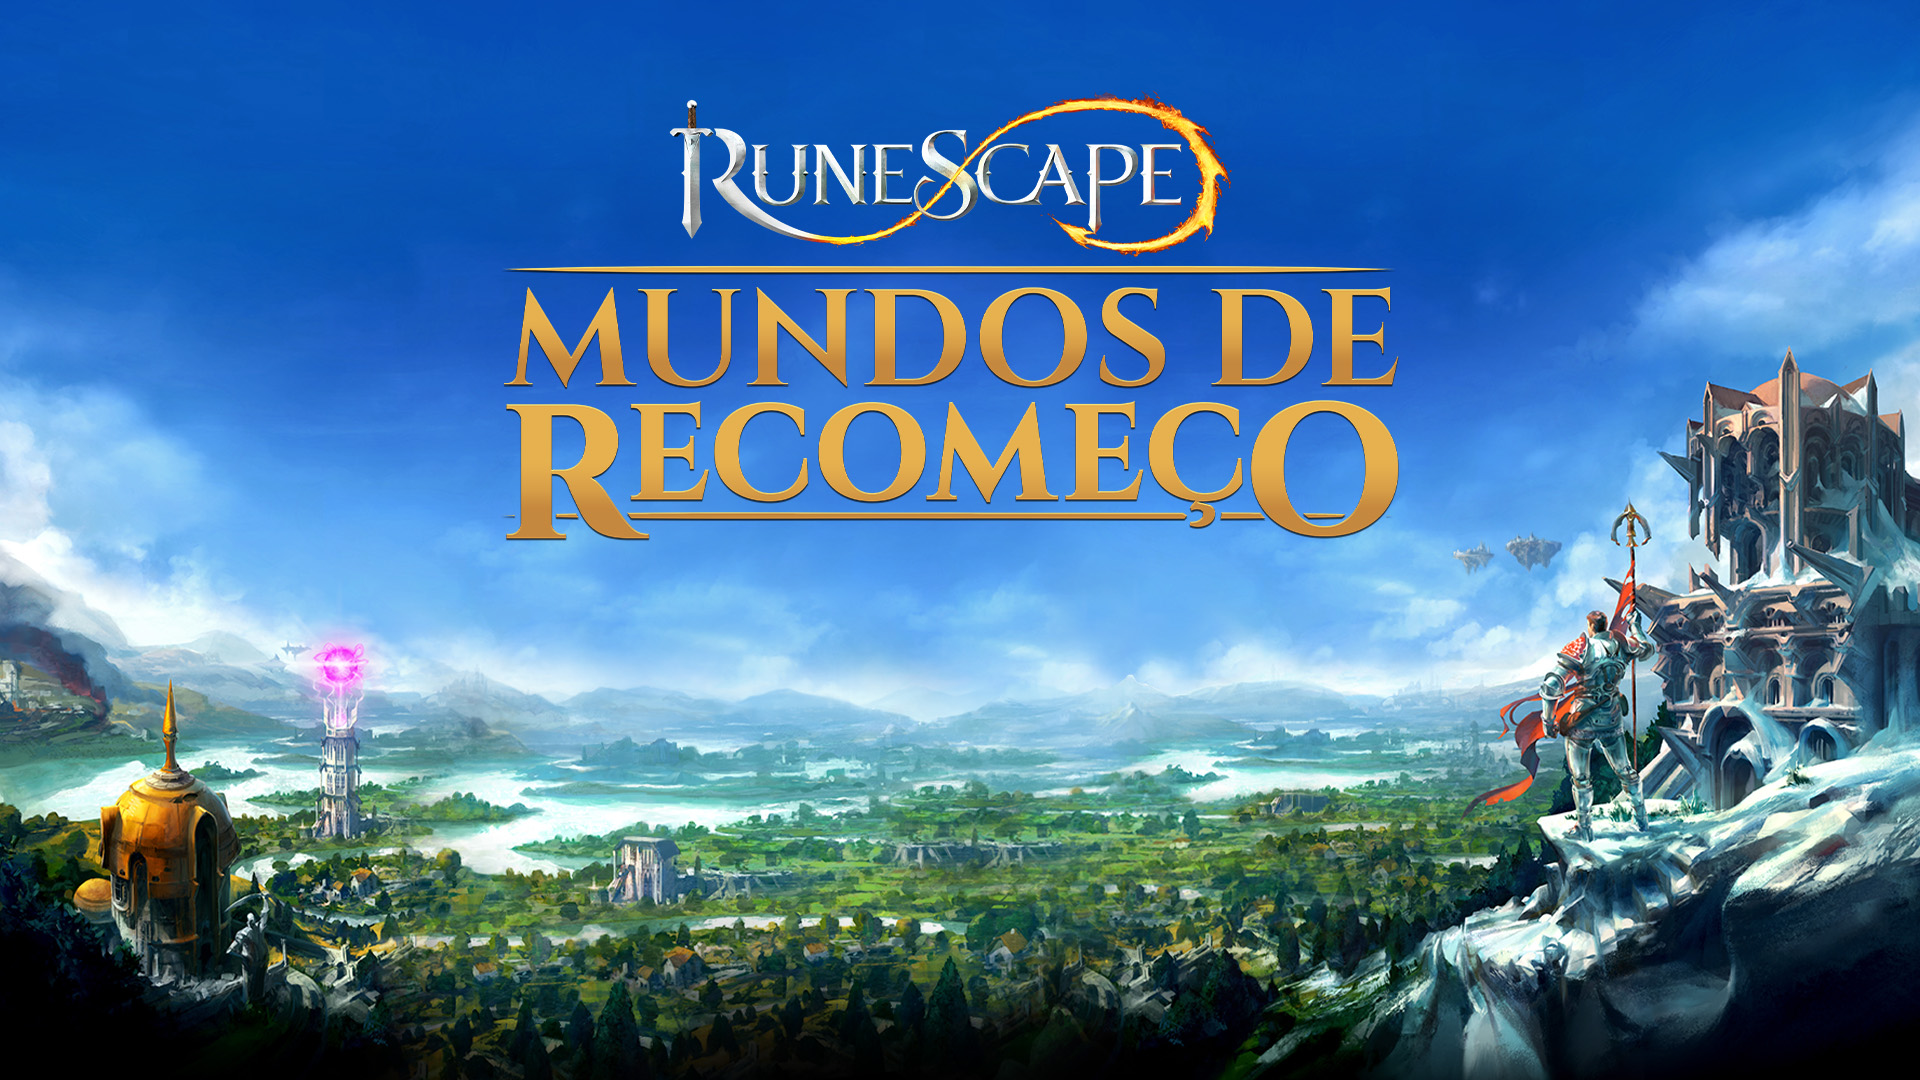 Mundos de Recomeço – Esta Semana no RuneScape Imagem teaser